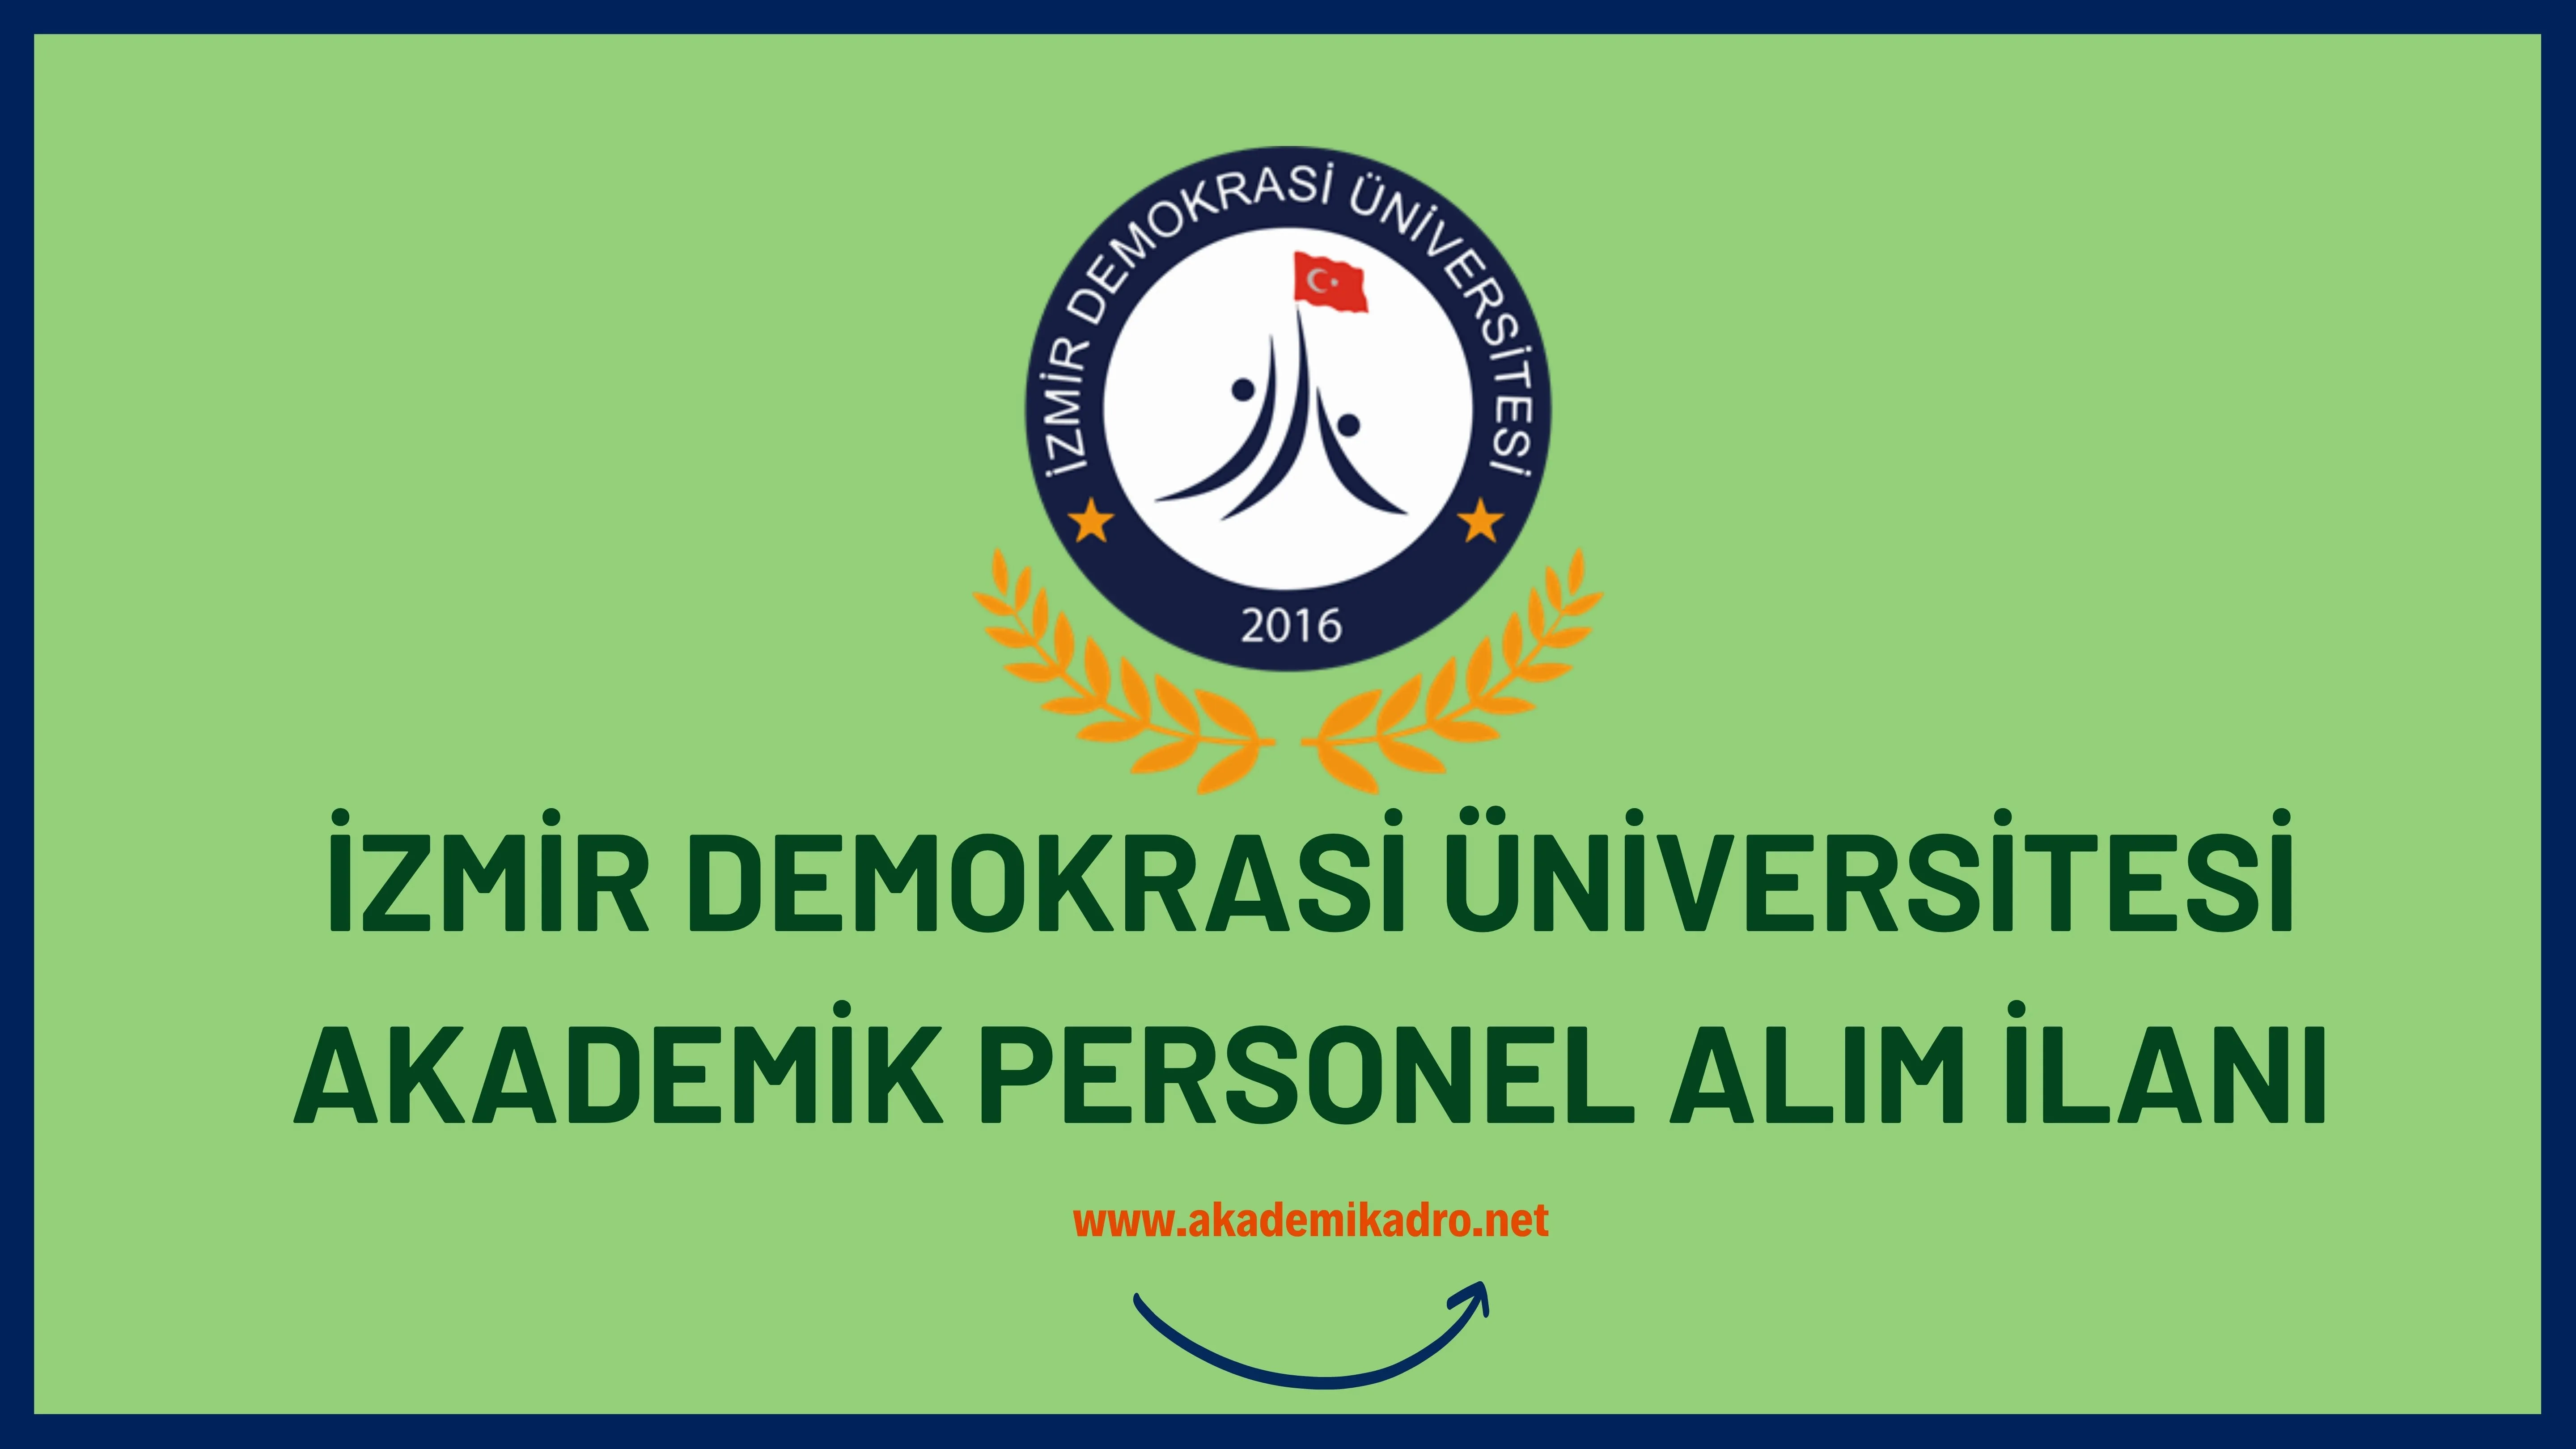 İzmir Demokrasi Üniversitesi birçok alandan 10 akademik personel alacak.